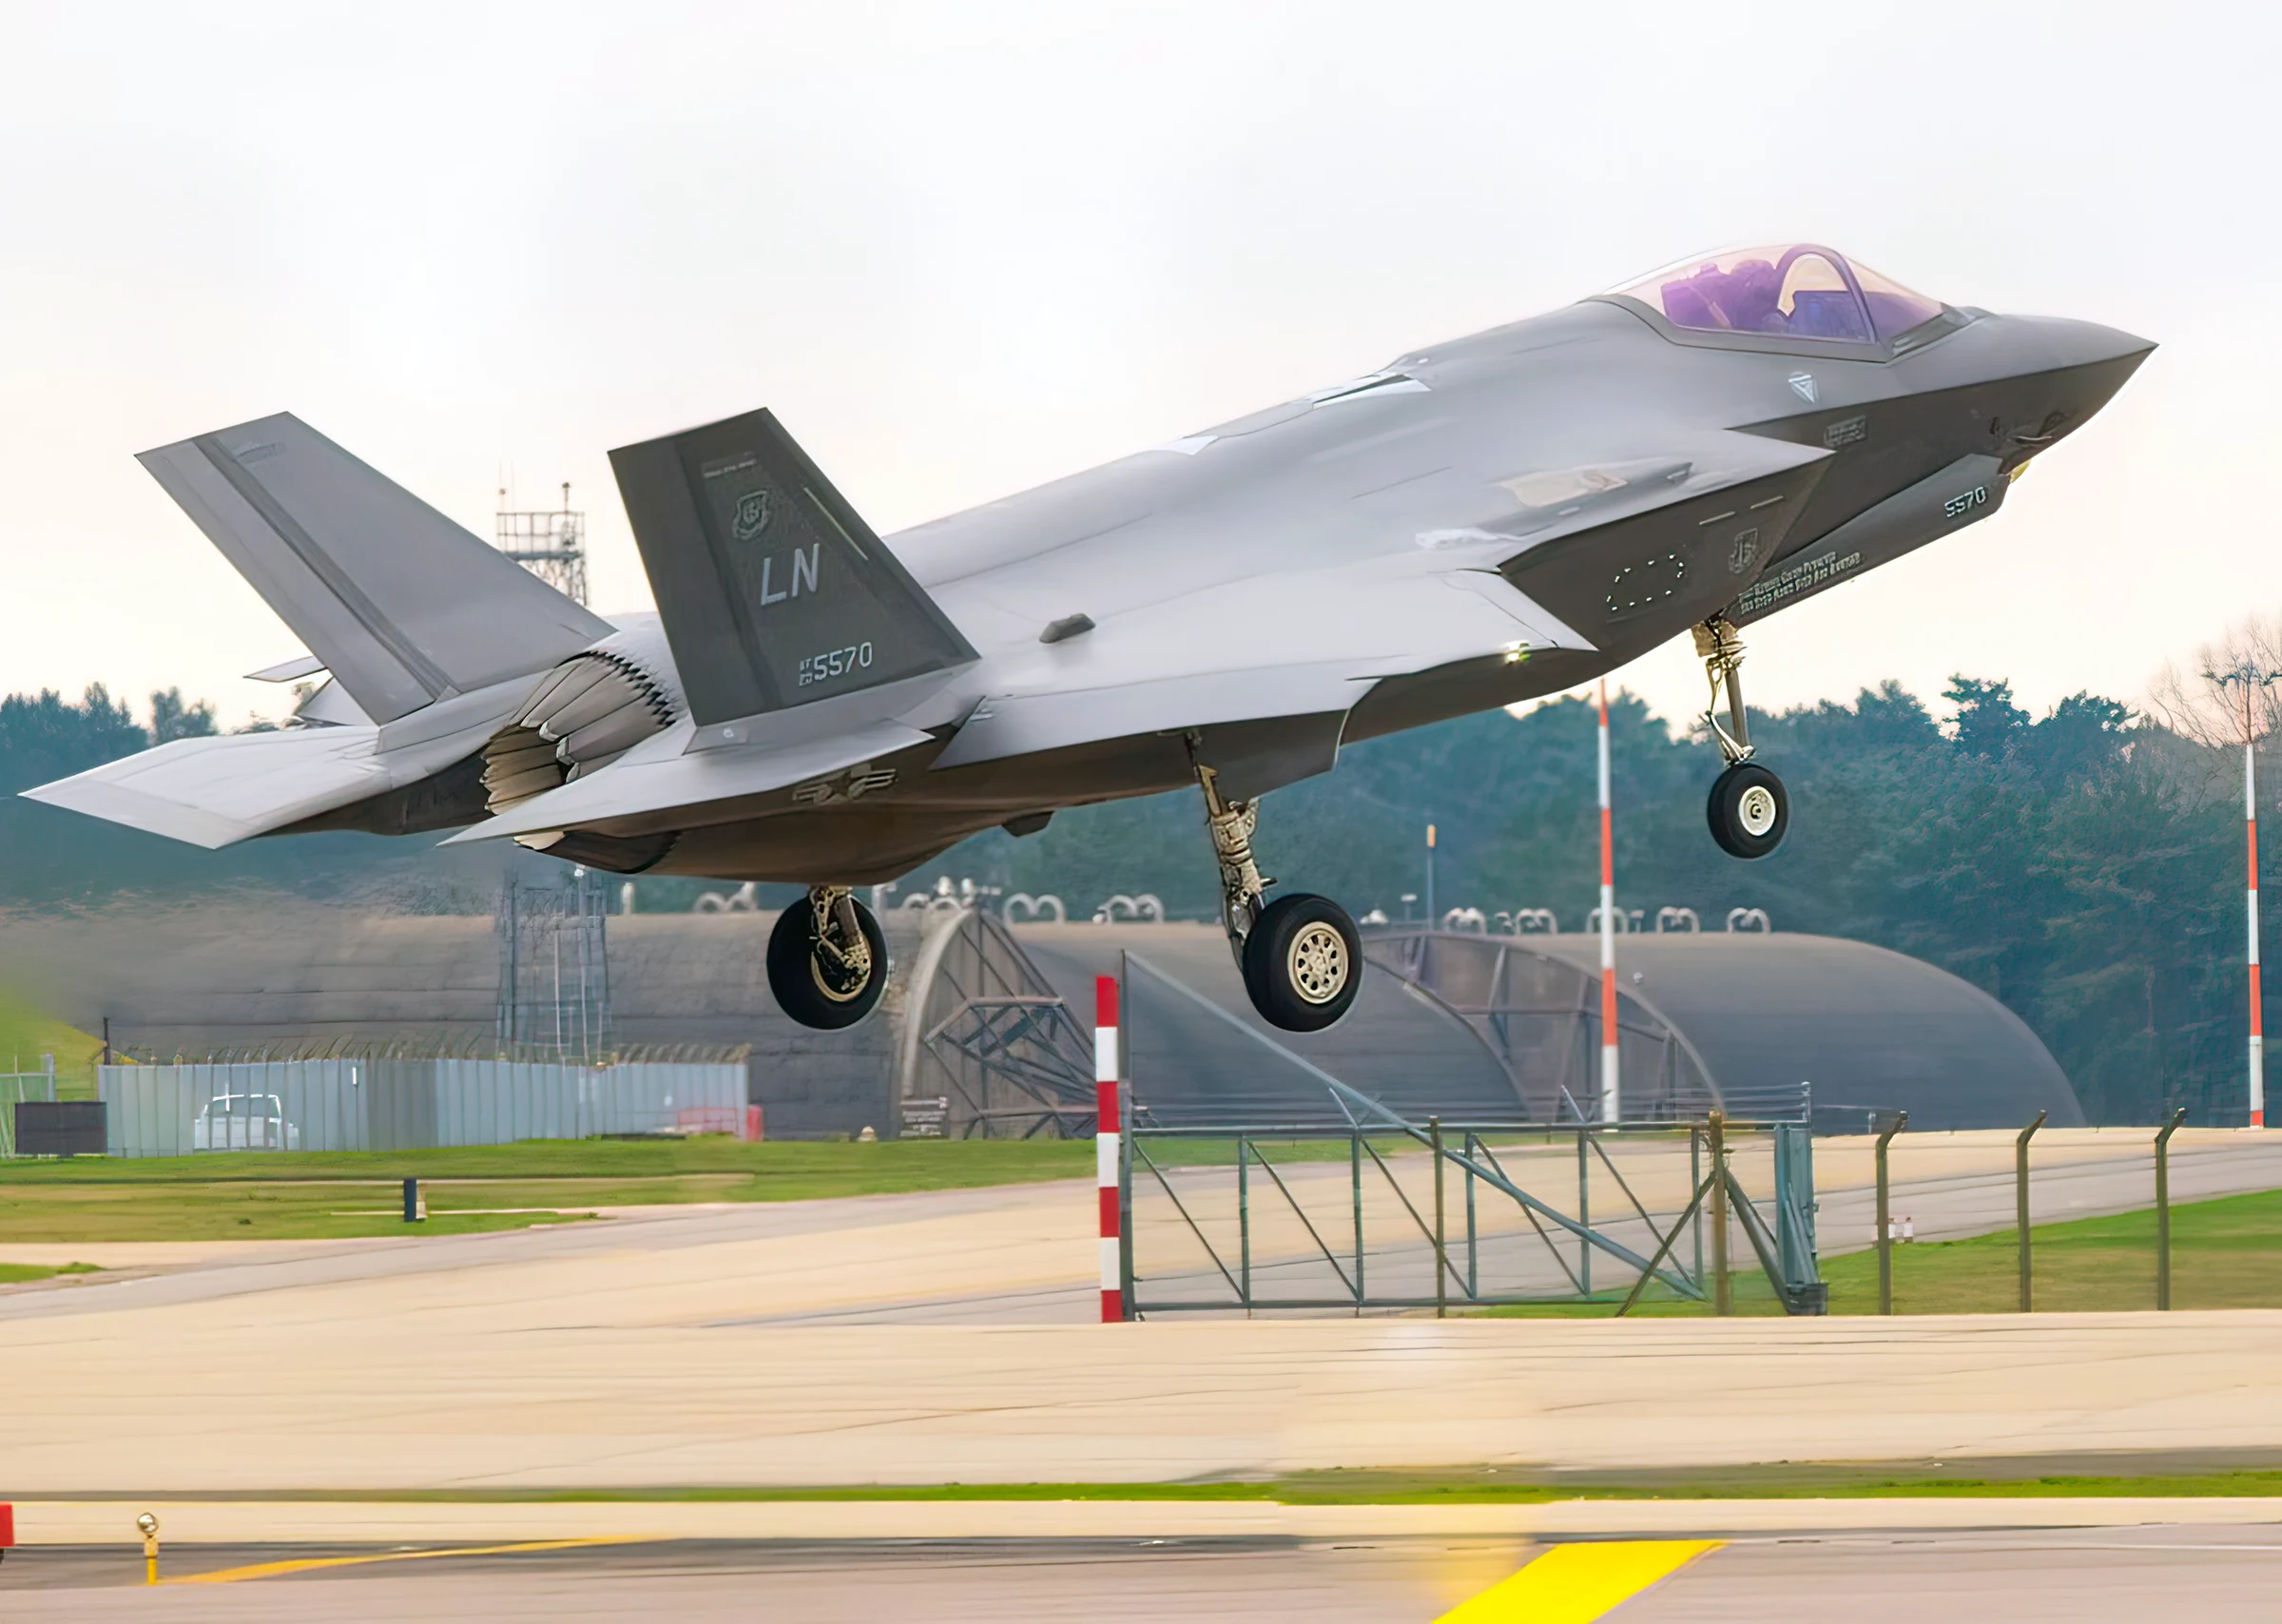 La capacidad de combate de la Real Fuerza Aérea británica se ha visto reforzada con la reciente incorporación de dos aviones F-35